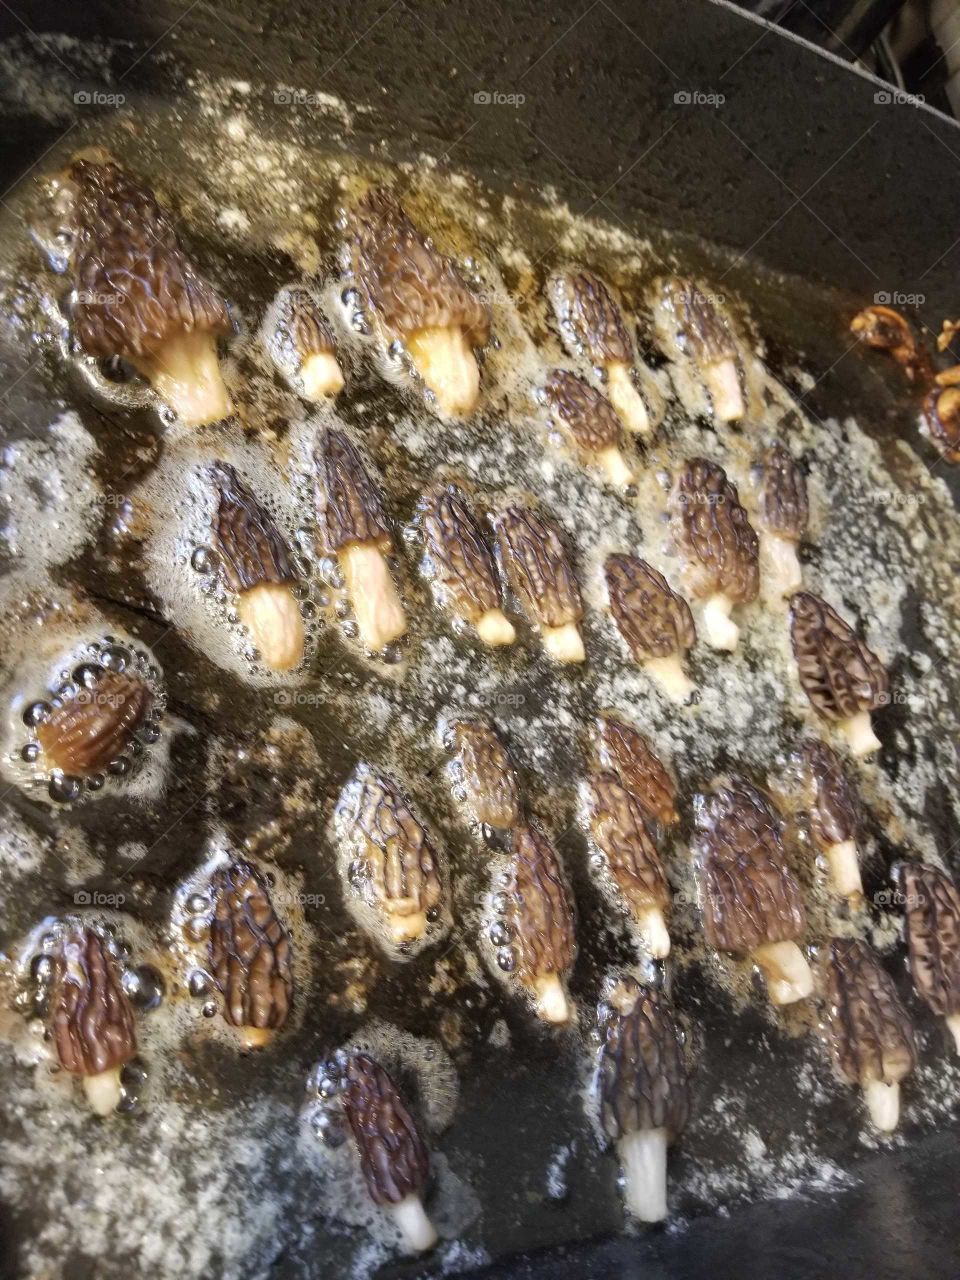 Brown, Wrinkled Morel Mushrooms Cooking in Oil